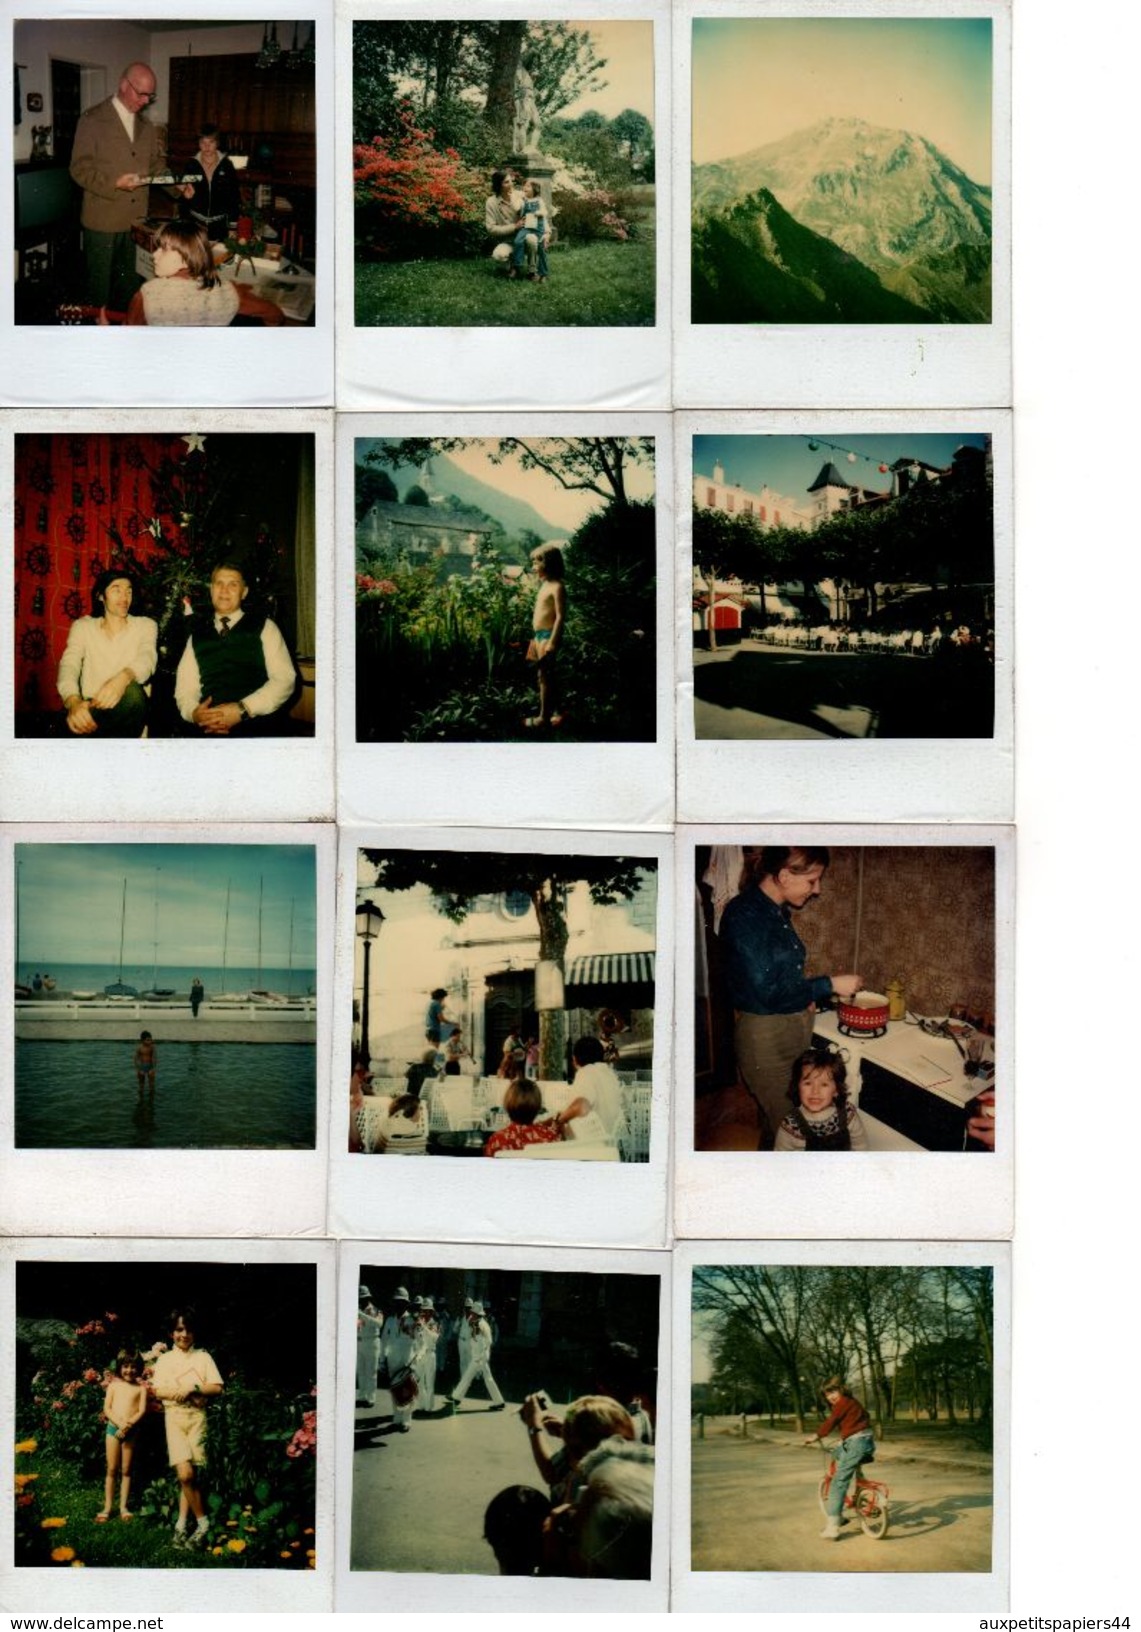 Lot de 130 Photos Couleur Polaroids Originales, Personnes, lieux, divers thèmes 1970/80